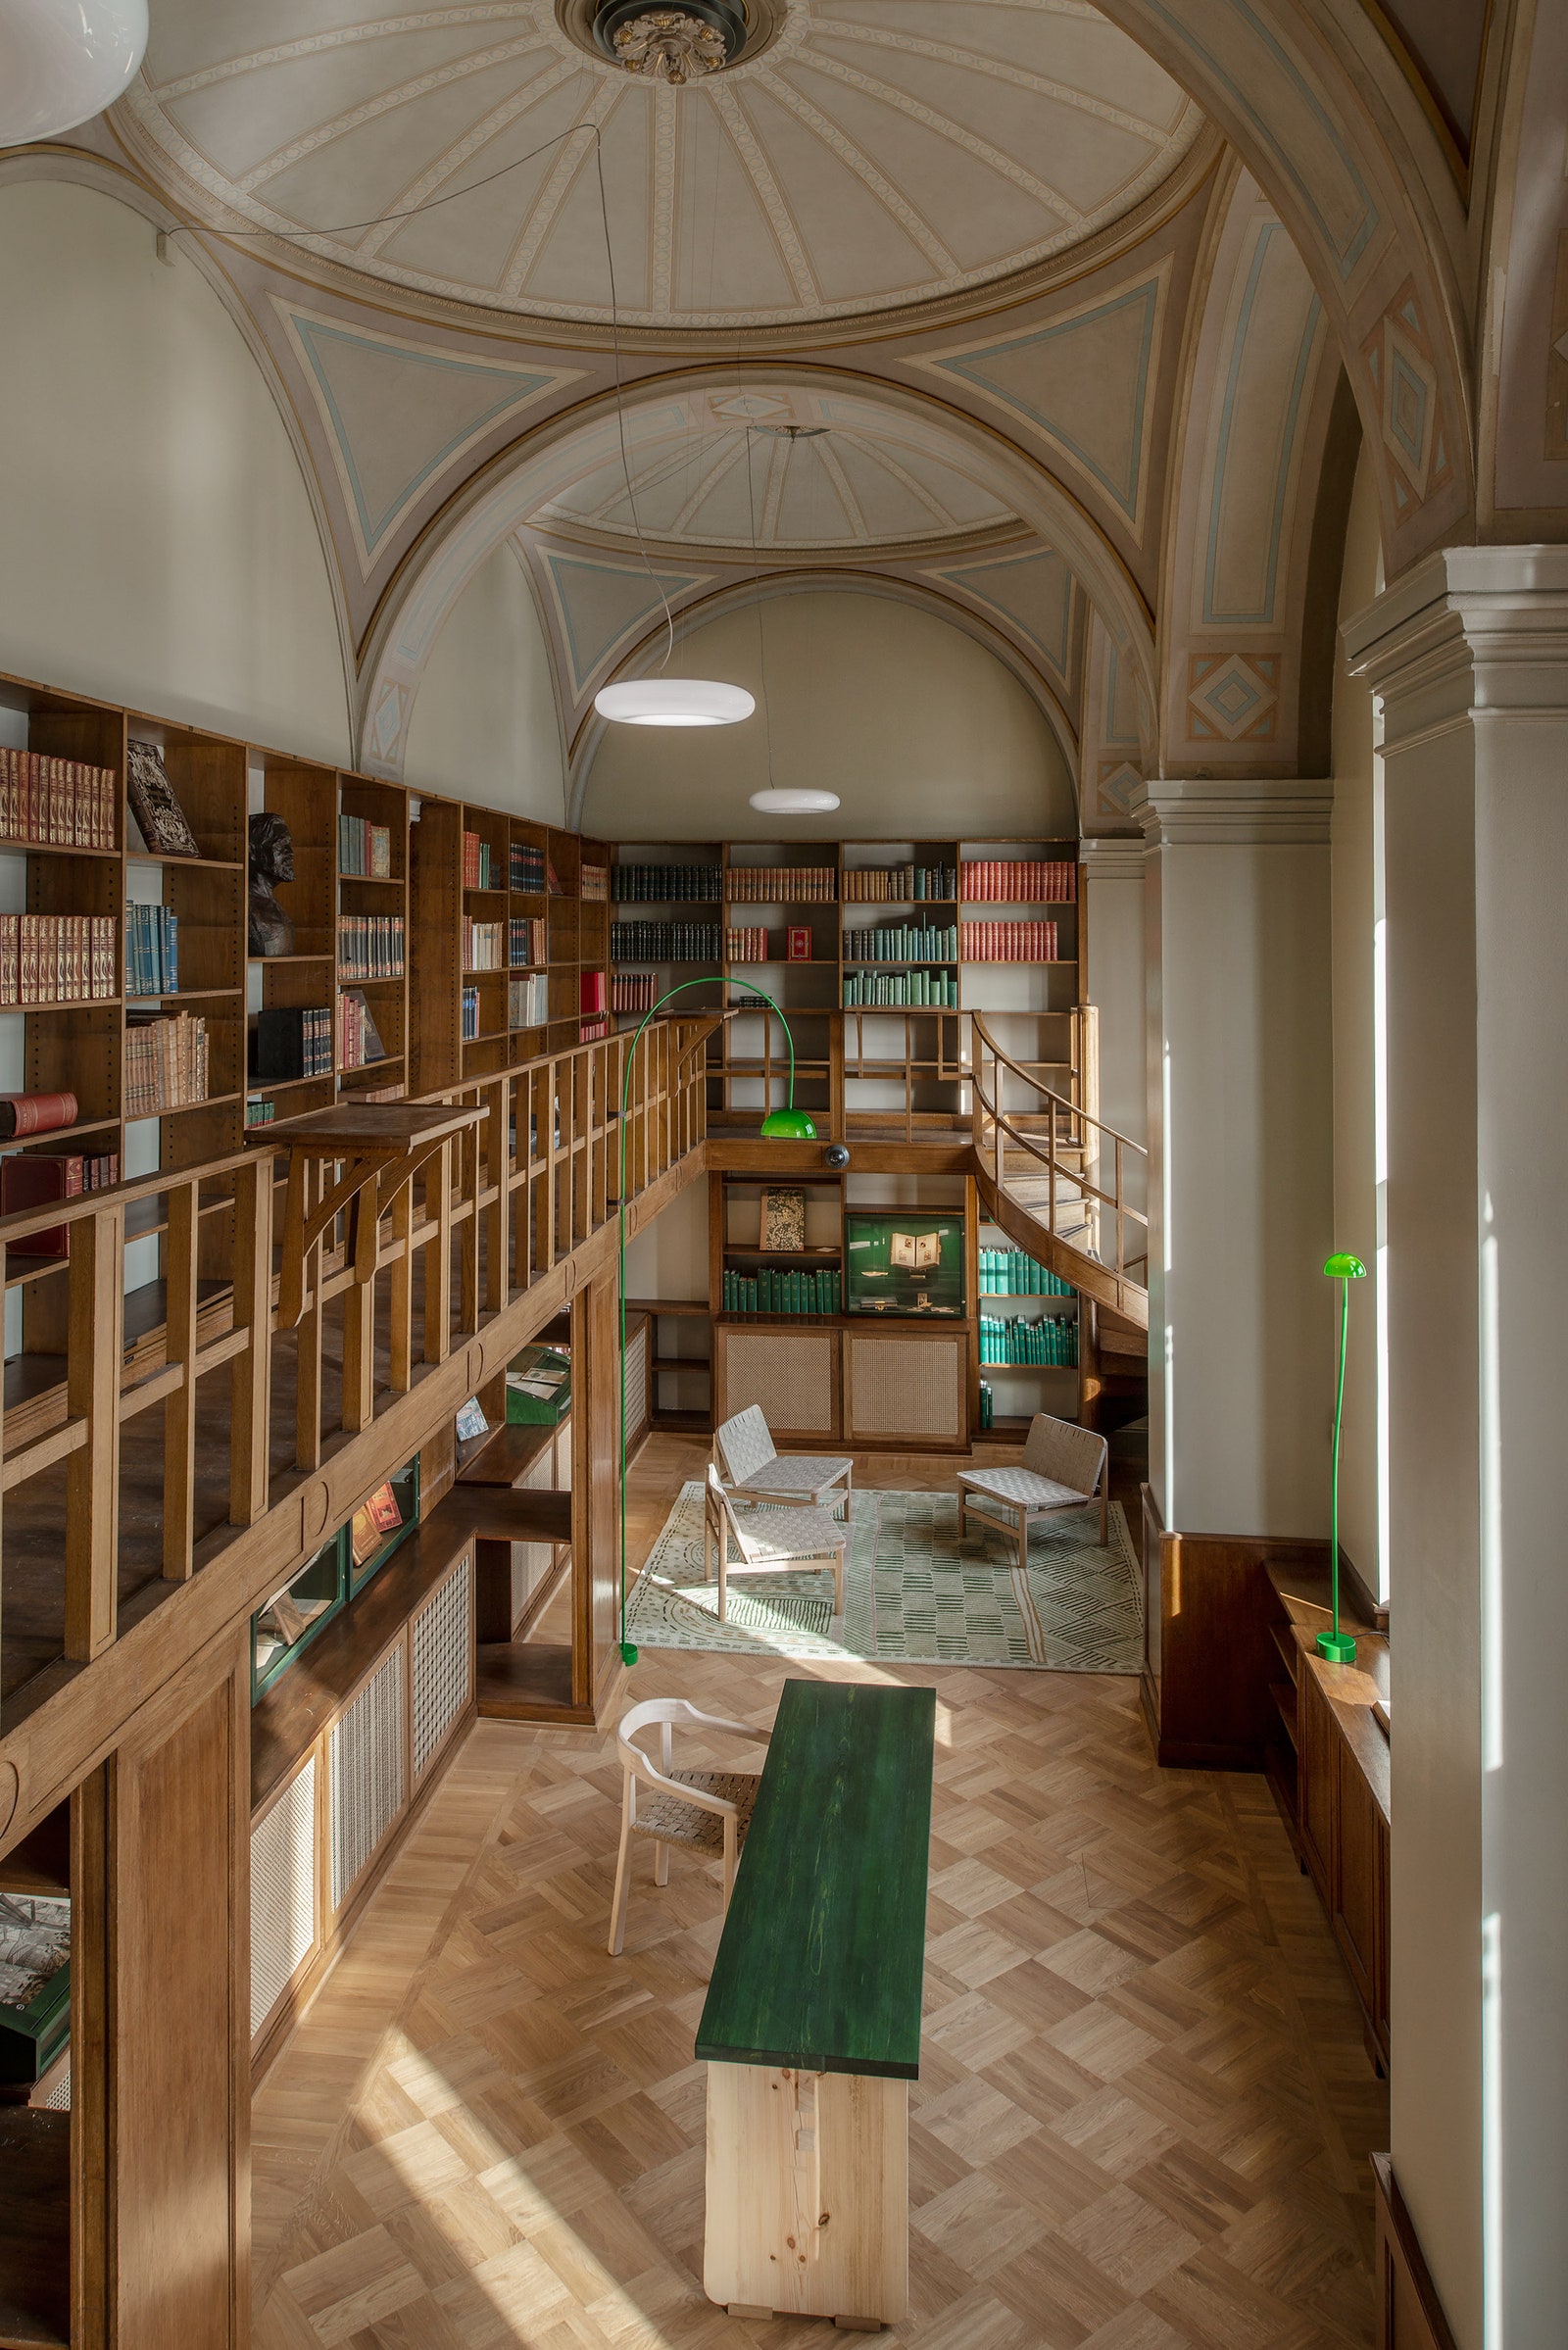 Экологичный редизайн библиотеки при Национальном музее Швеции